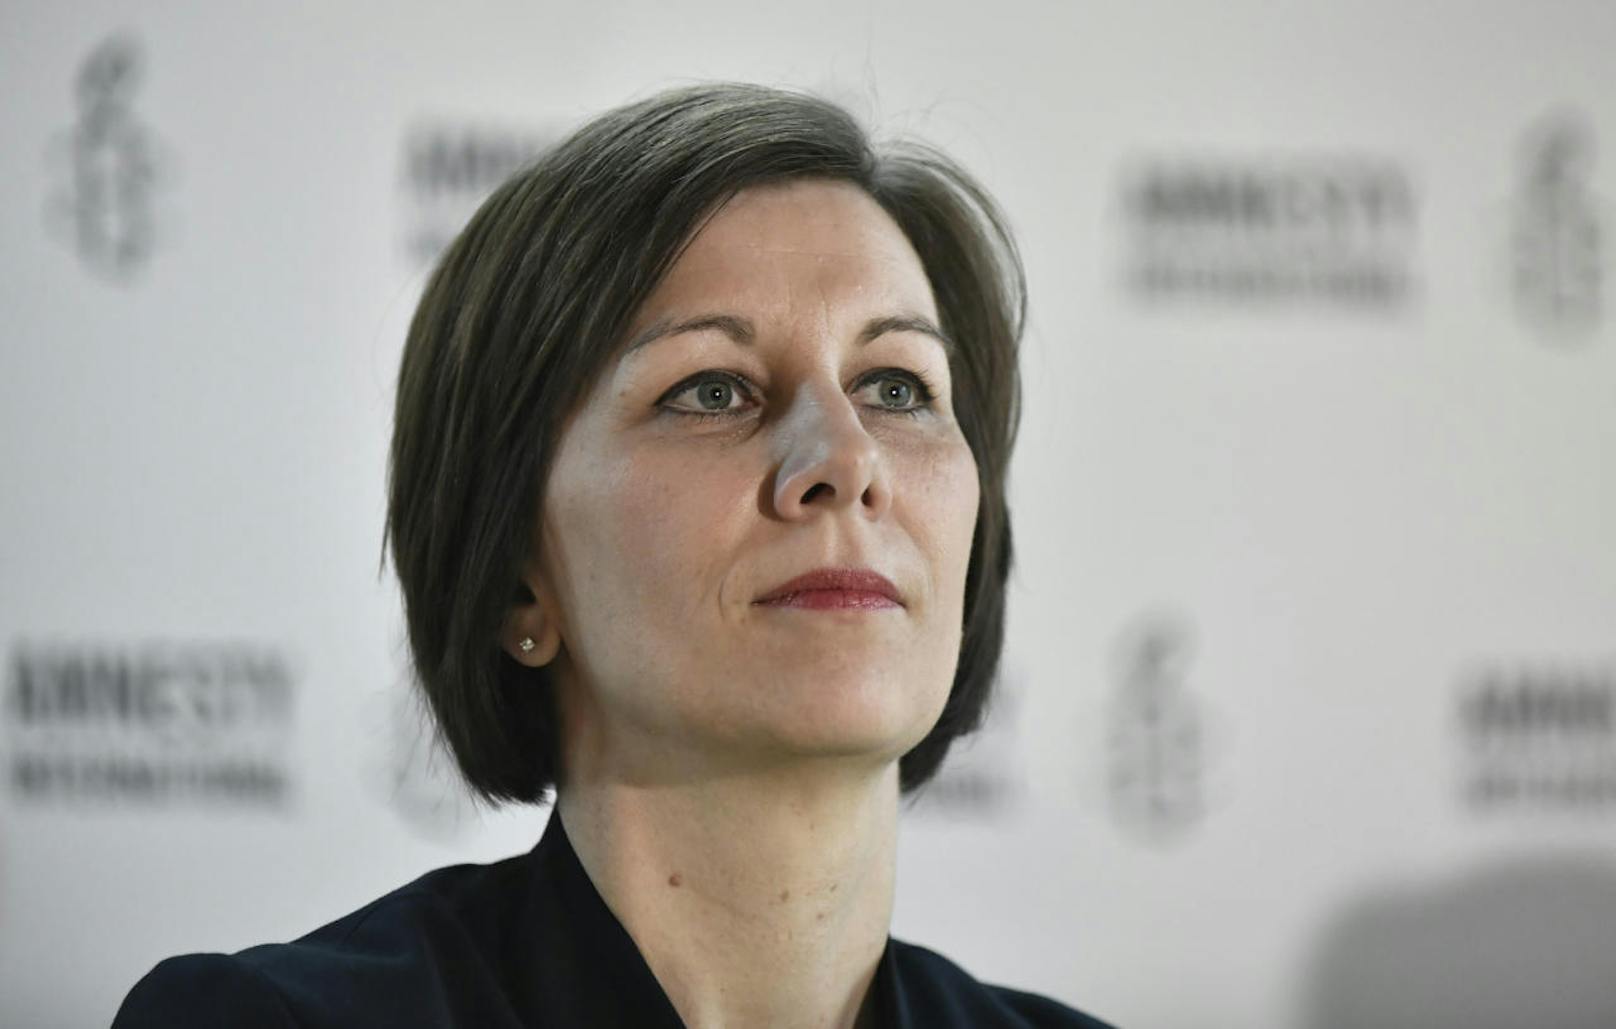 Annemarie Schlack ist Geschäftsführerin von Amnesty International Österreich. Sie sagt: "Wenn man einer Person die Menschenrechte nimmt, dann nimmt man sie uns allen."